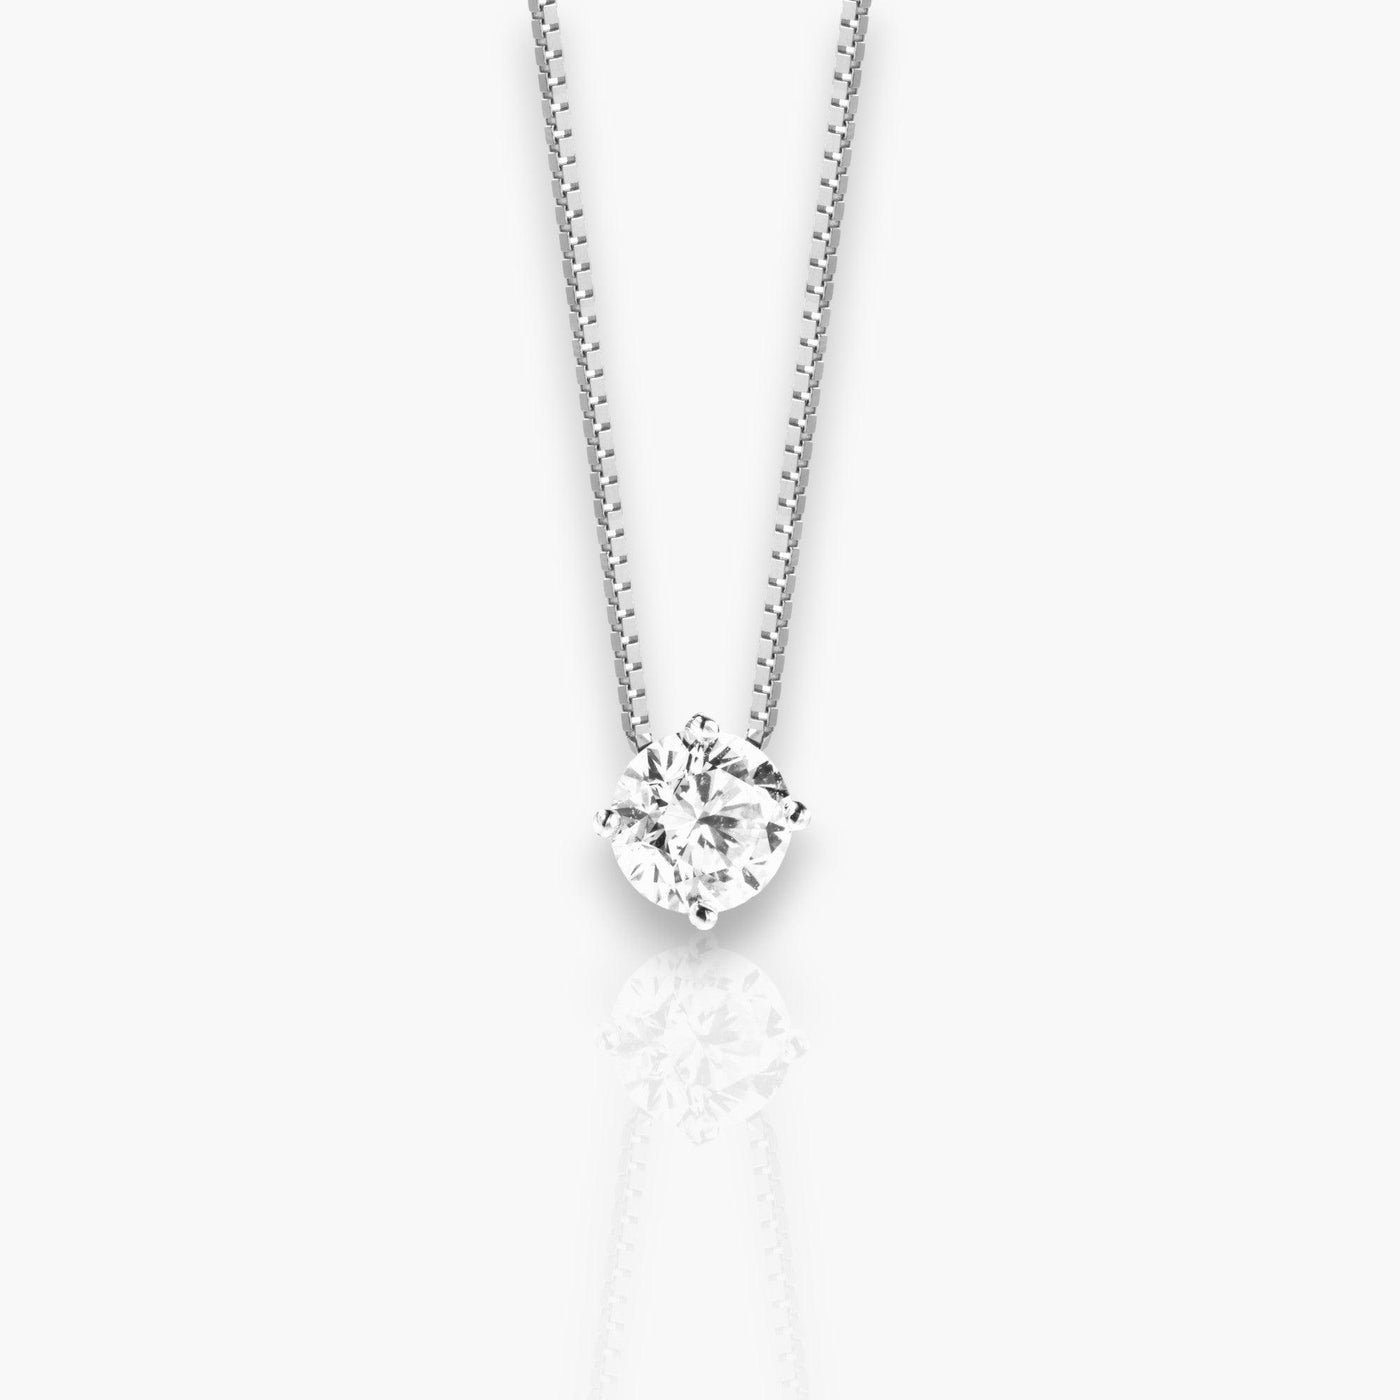 Necklace in White Gold with Brilliant Cut Diamond - Moregola Fine Jewelry